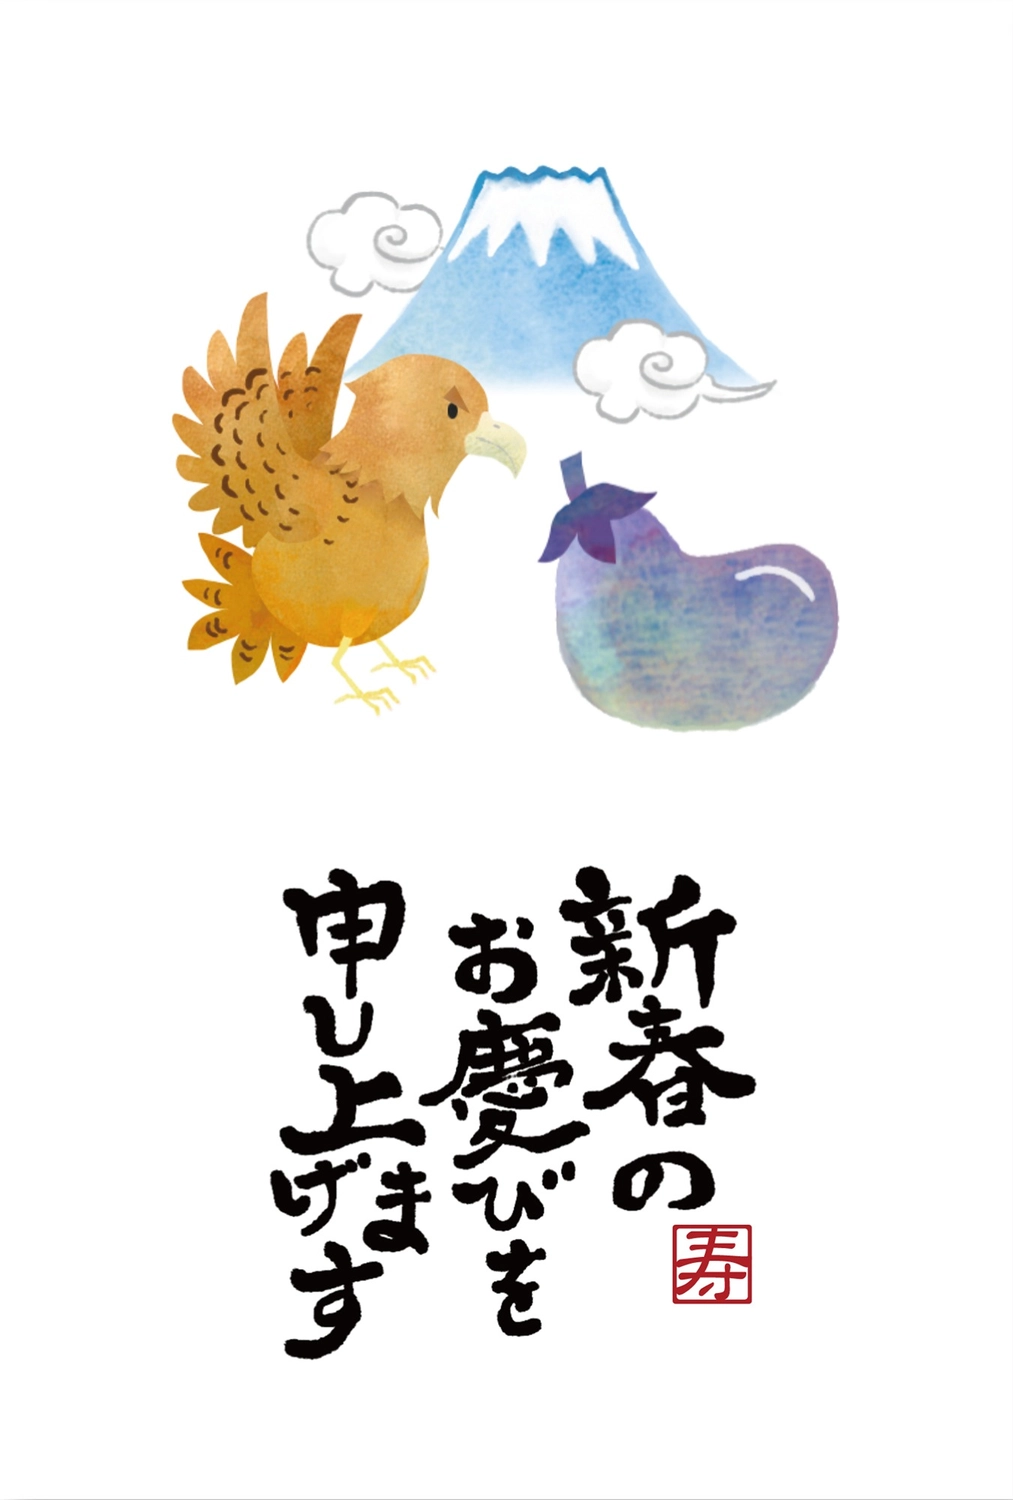 初夢の年賀状, White background, margin, year's first dream, New Year Card template